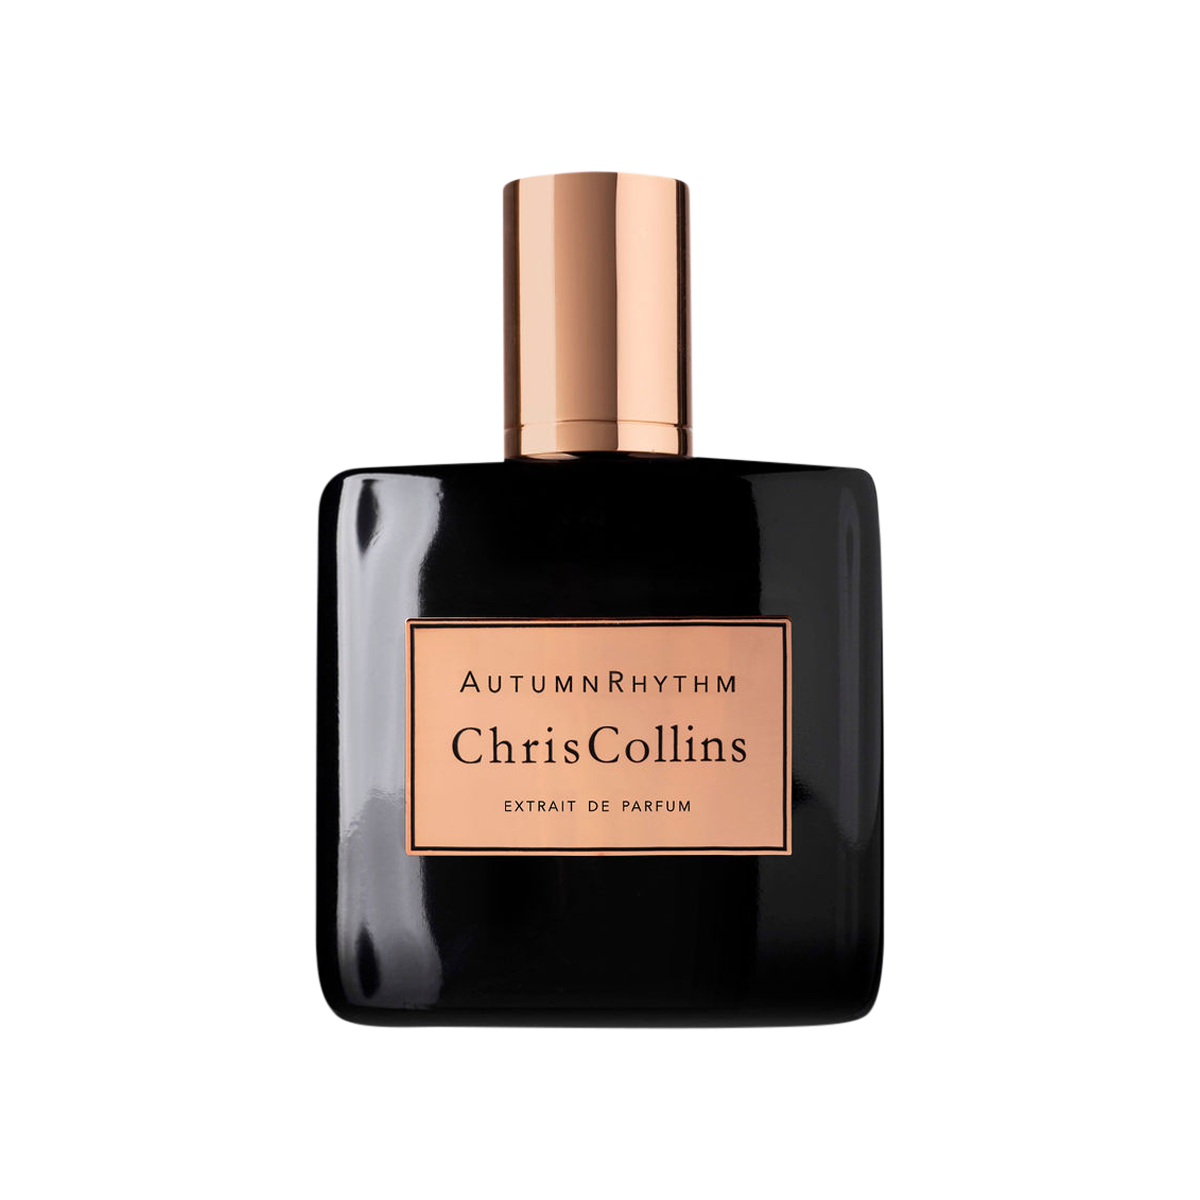 Chris Collins - Autumn Rhythm Extrait de Parfum